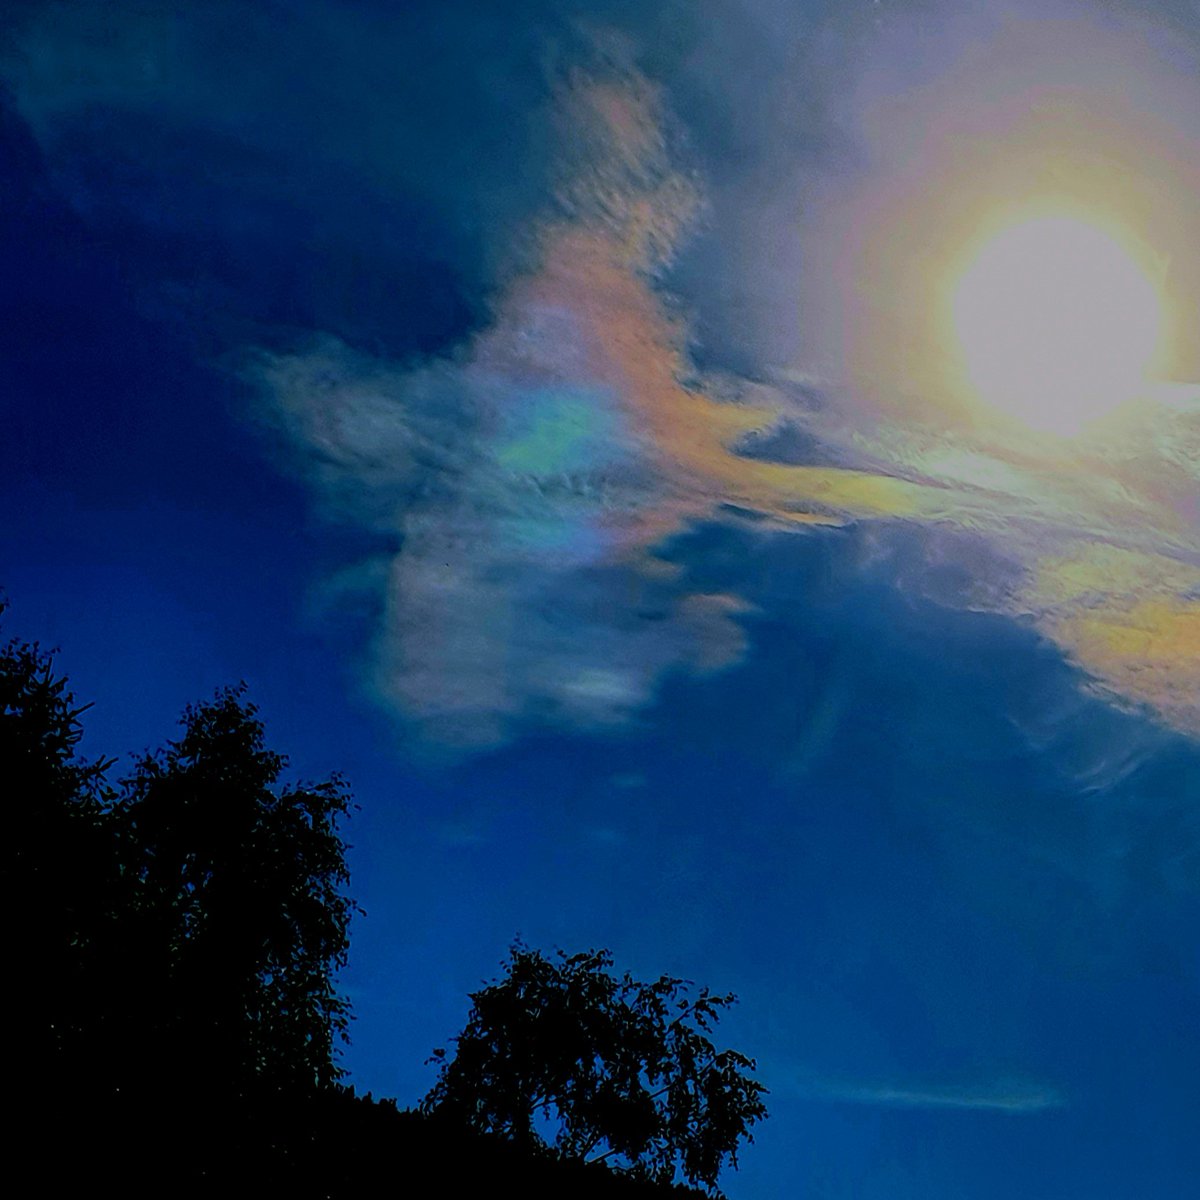 Il fantasmino colorato caduto nella vernice nel cielo così disegnato il sole è la sua cornice @CasaLettori #scritturebrevi #istantaneeDa @ValdidentroAV @Valtellina #inLombardia #ThePhotoHour #StormHour